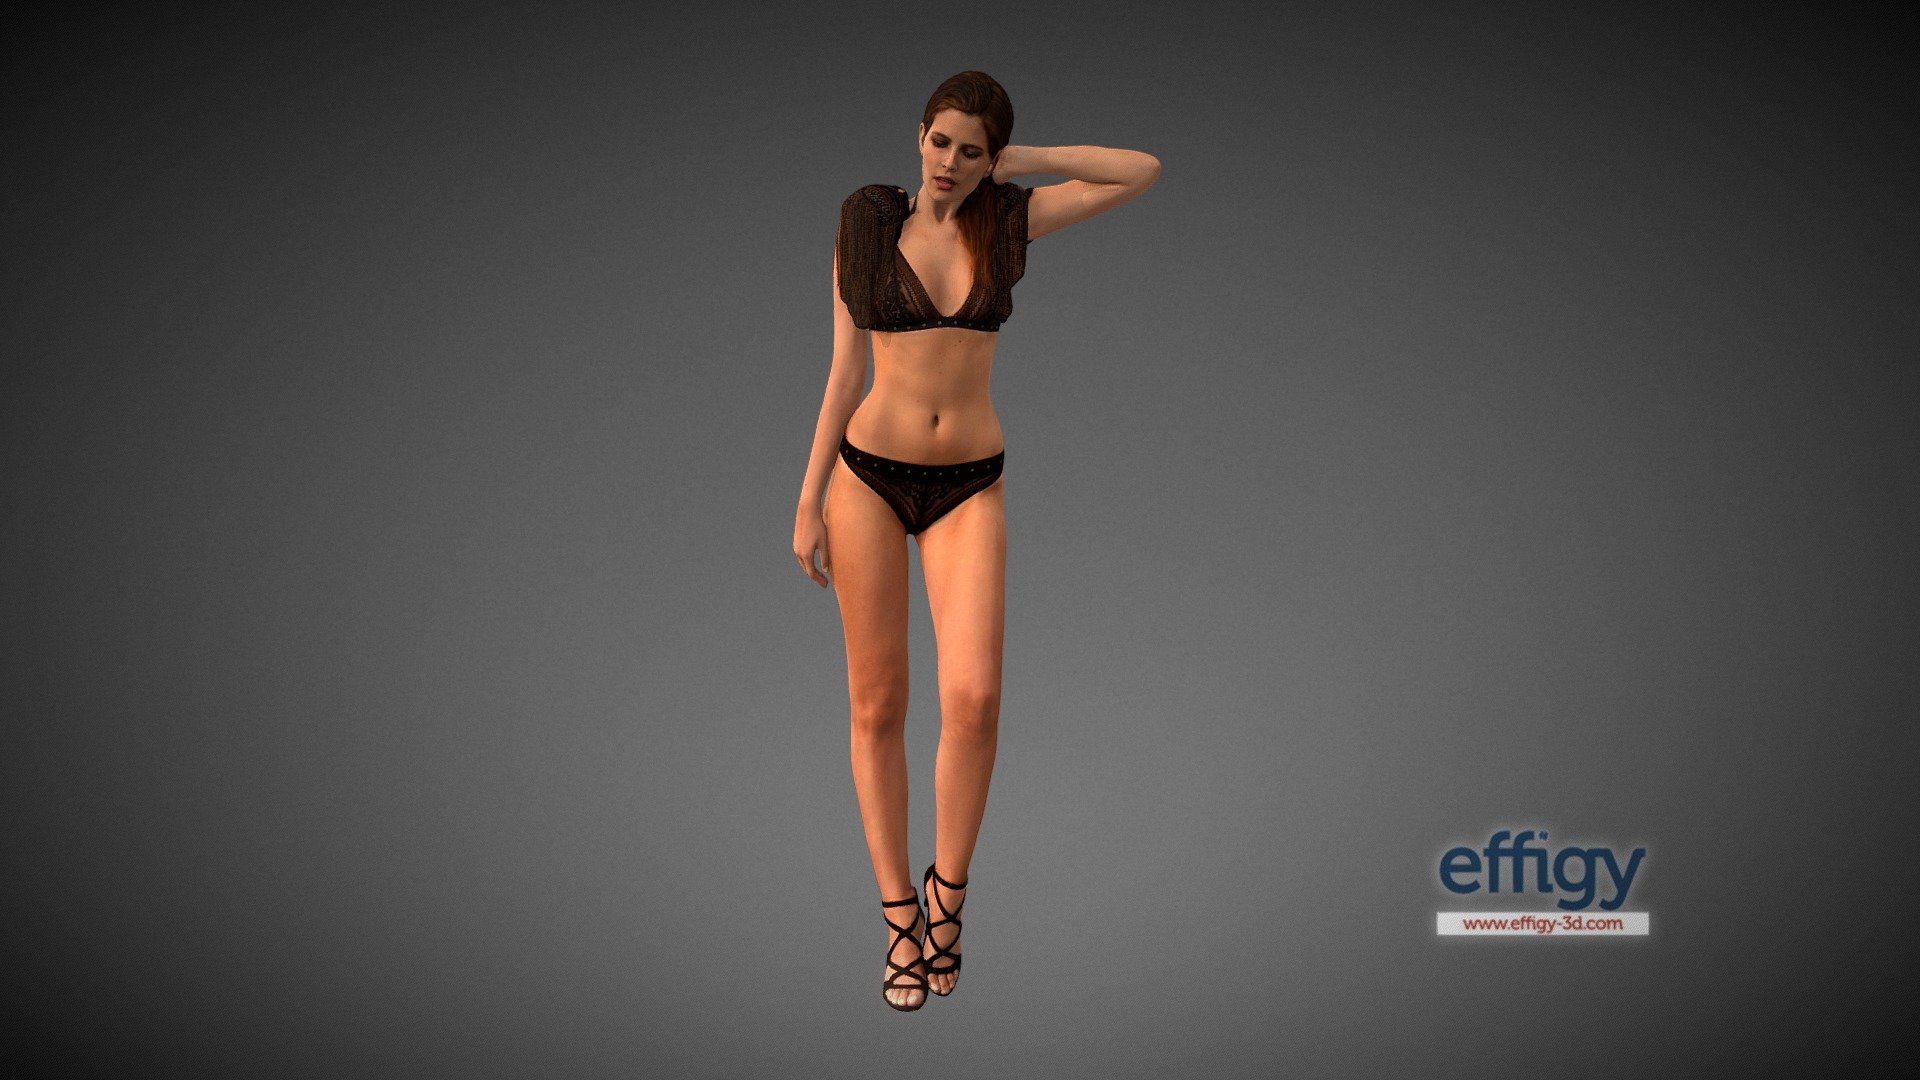 Exemple de modèle 3D pour appli  Réalité Augmentée, Etam, septembre 2017. 
Scanné et modelisé chez Effigy Paris 3d model